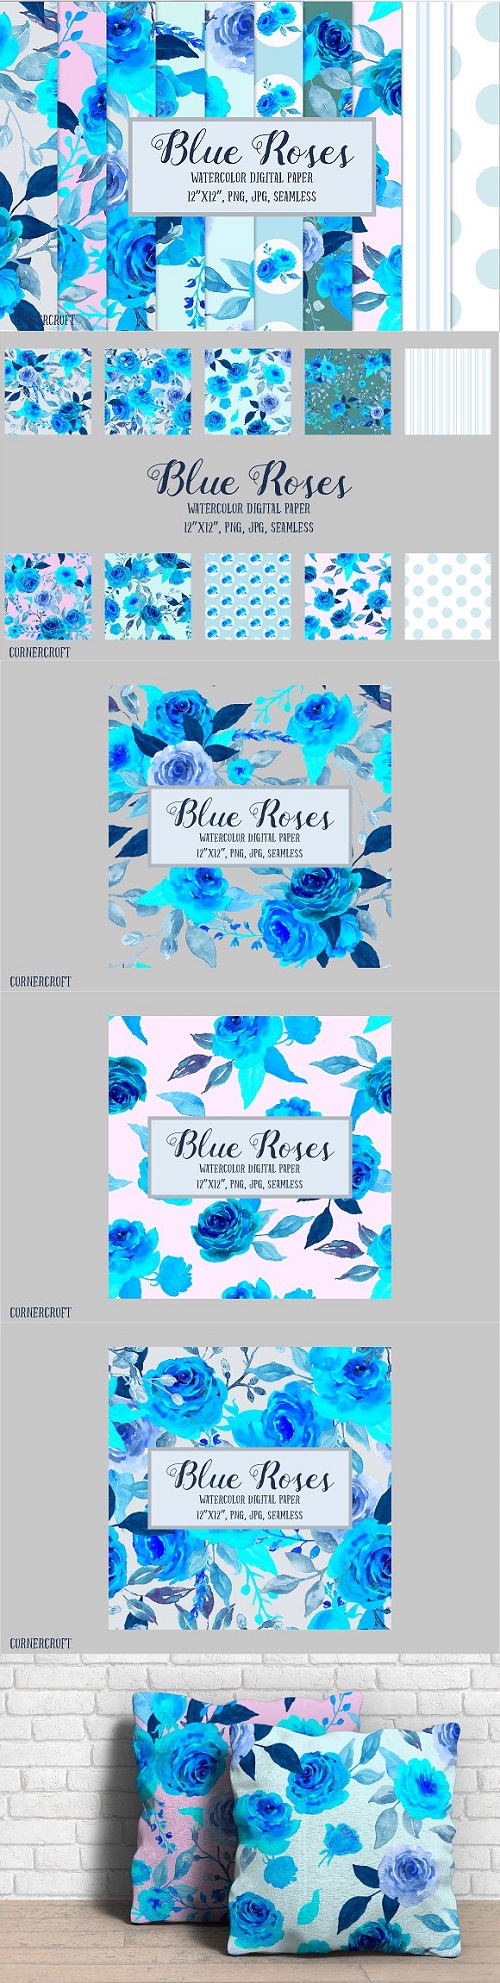 Blue Rose Digital Paper Watercolor - 1581214